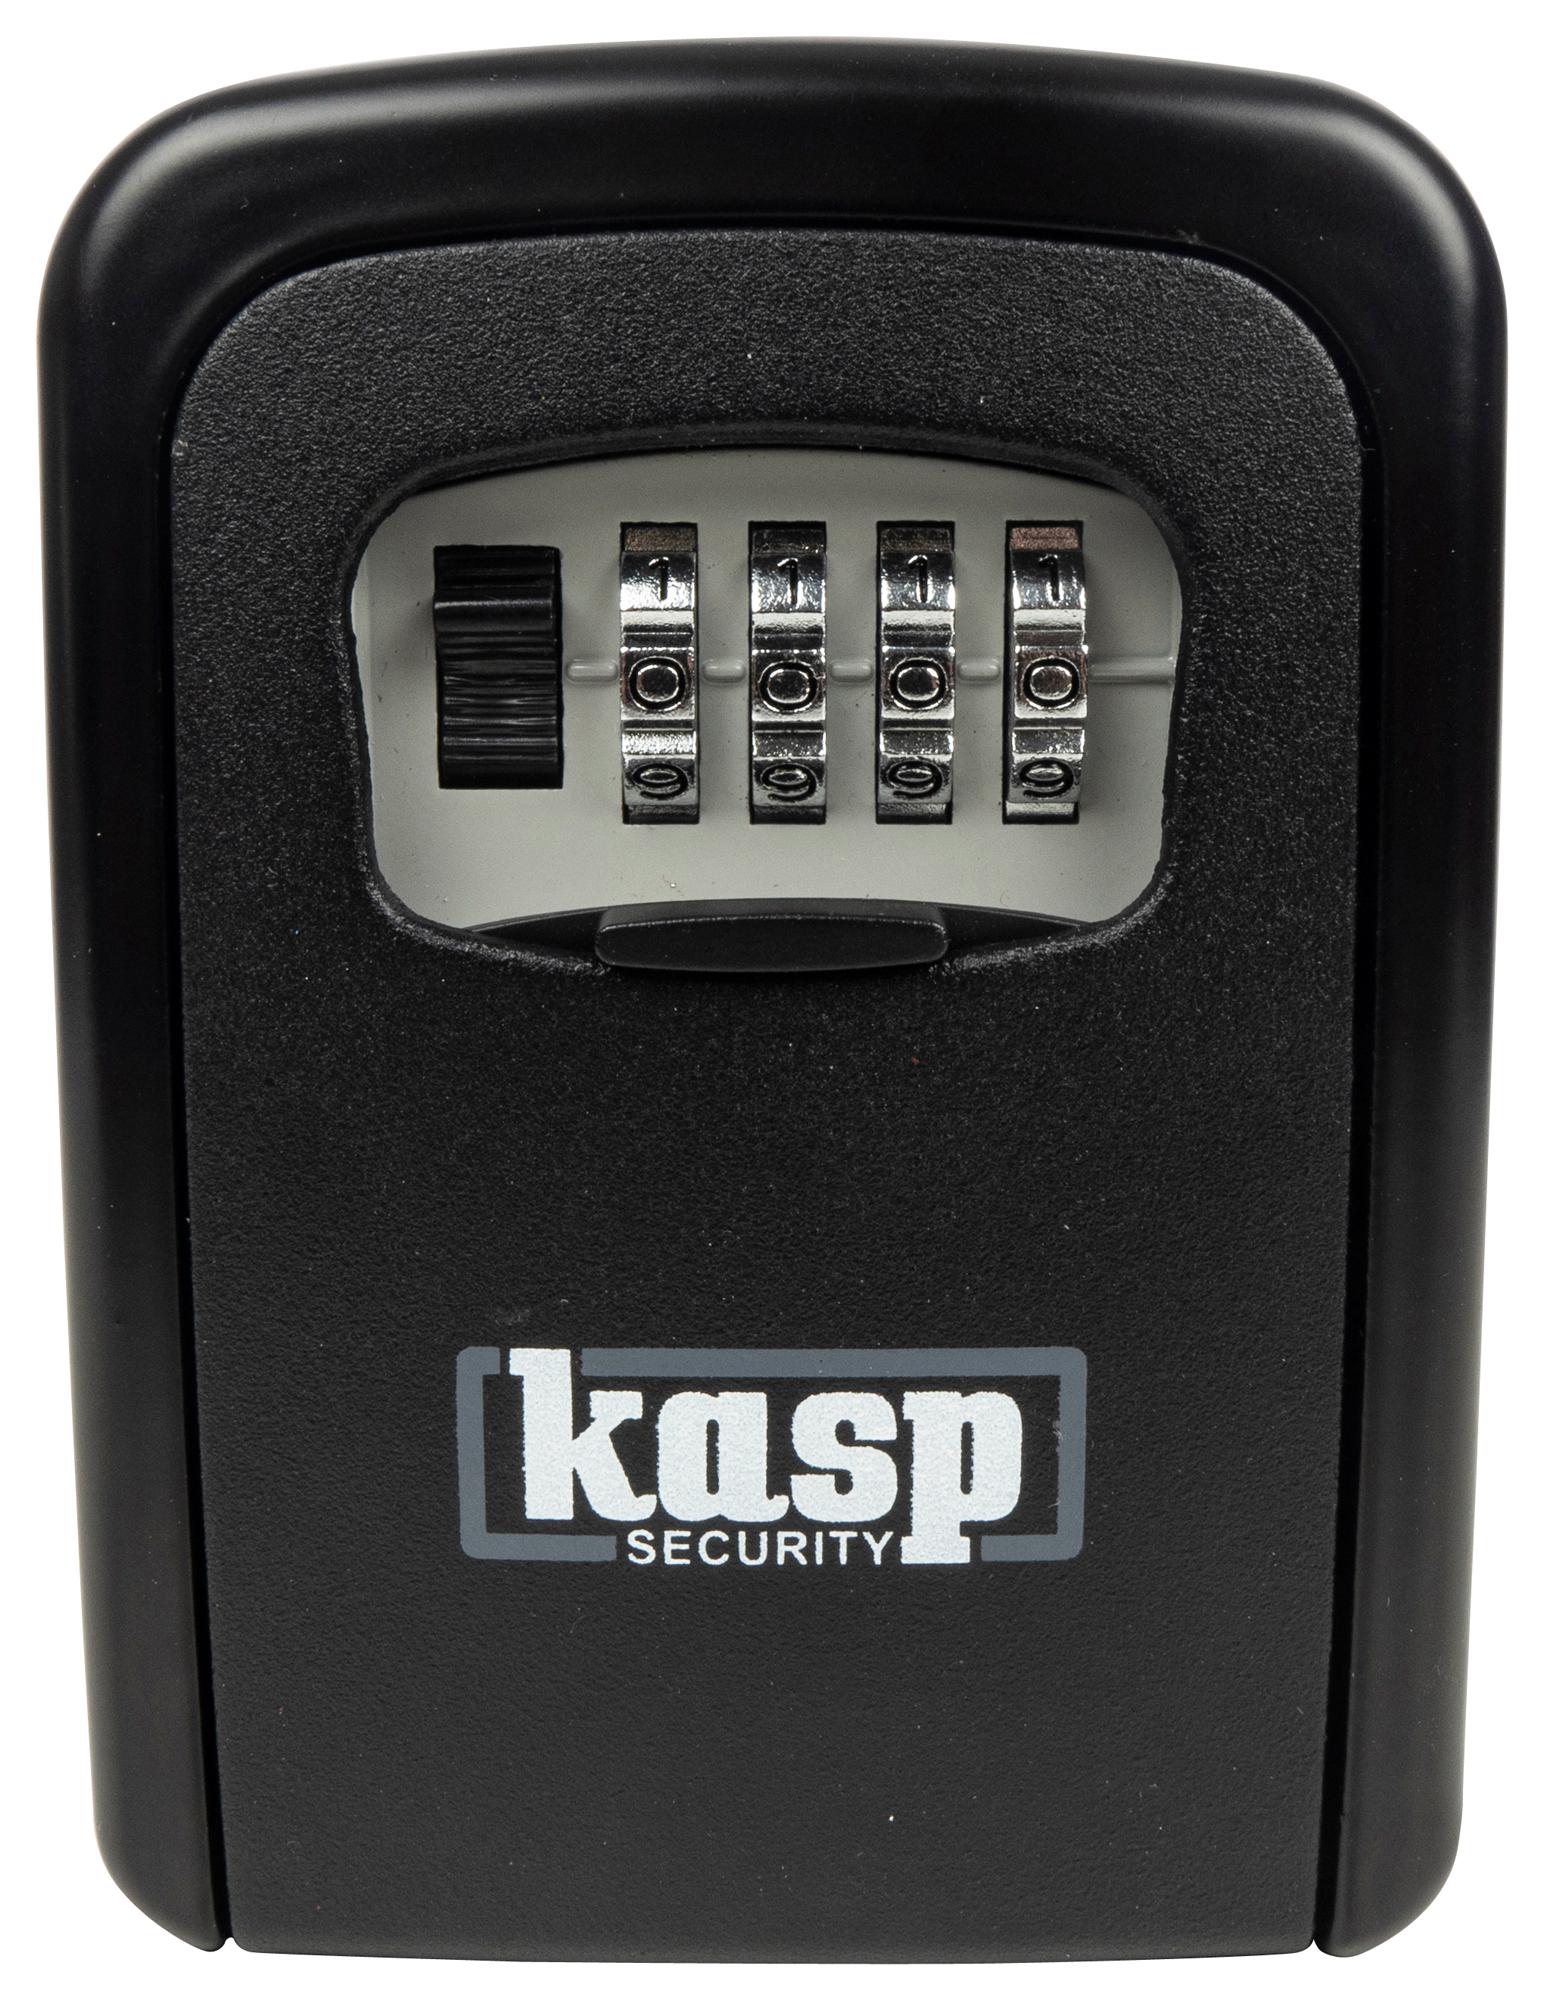 K60090D COMBINATION KEY SAFE, 90MM KASP SECURITY